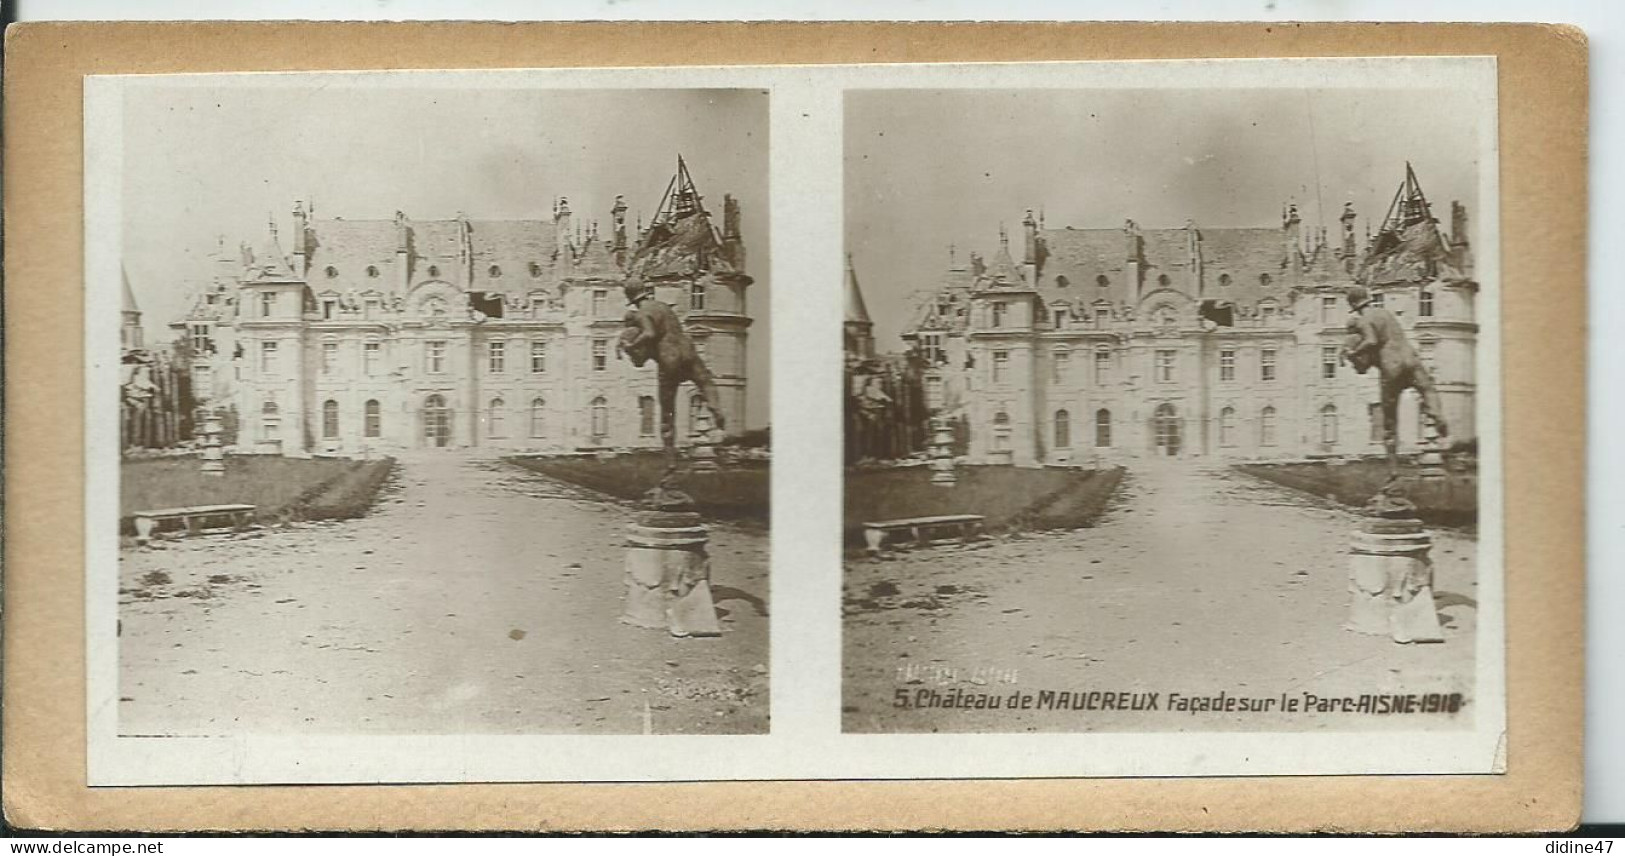 PHOTOS STÉRÉOSCOPIQUES -  Château De MAUCREUX. Façade Sur Le Parc - Stereoscopic